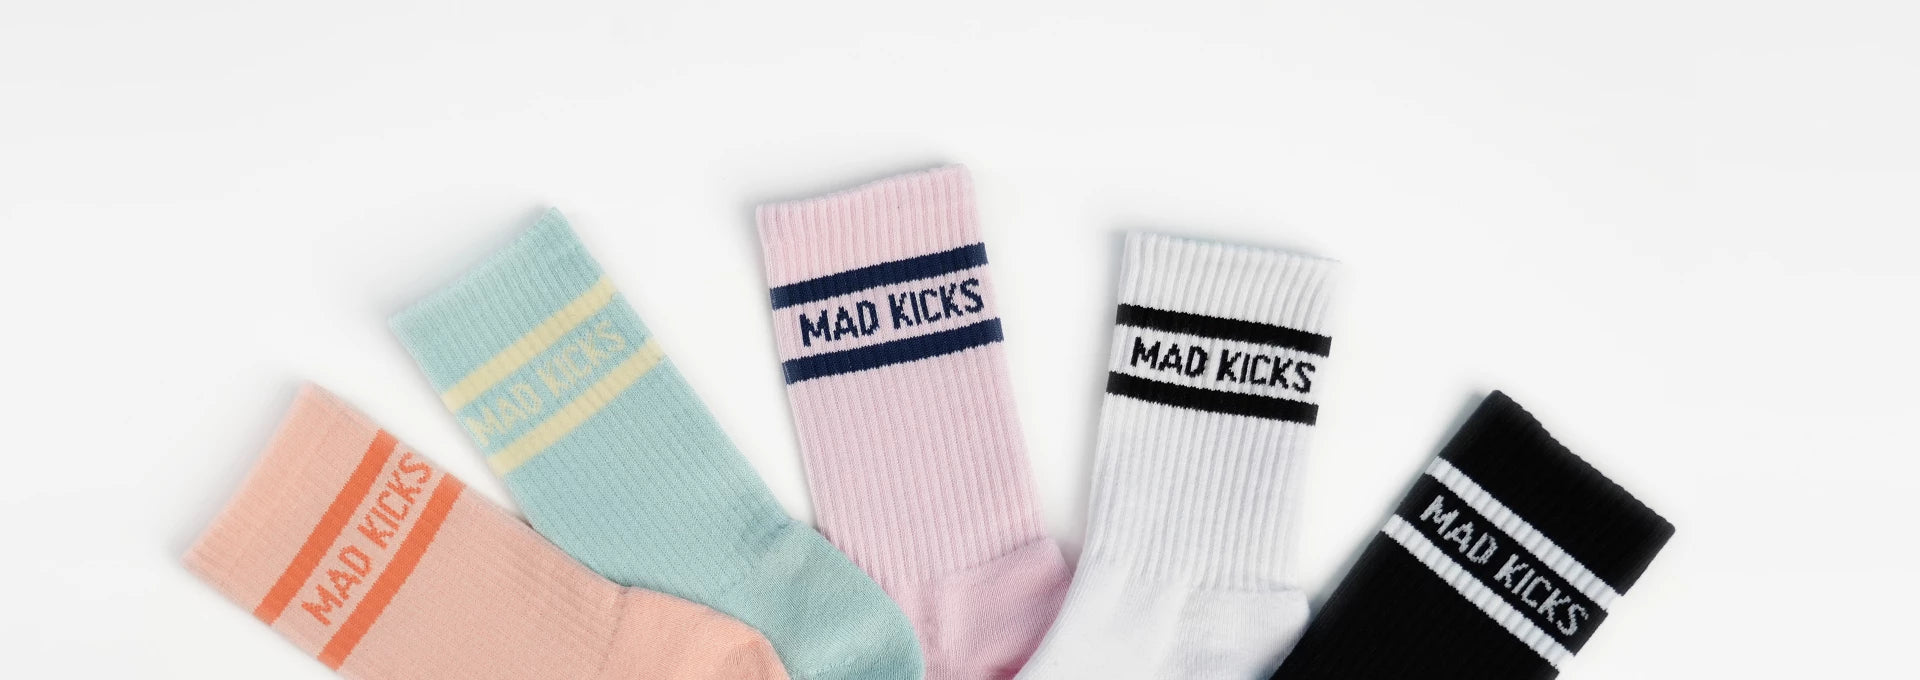 Mad Kicks Socks